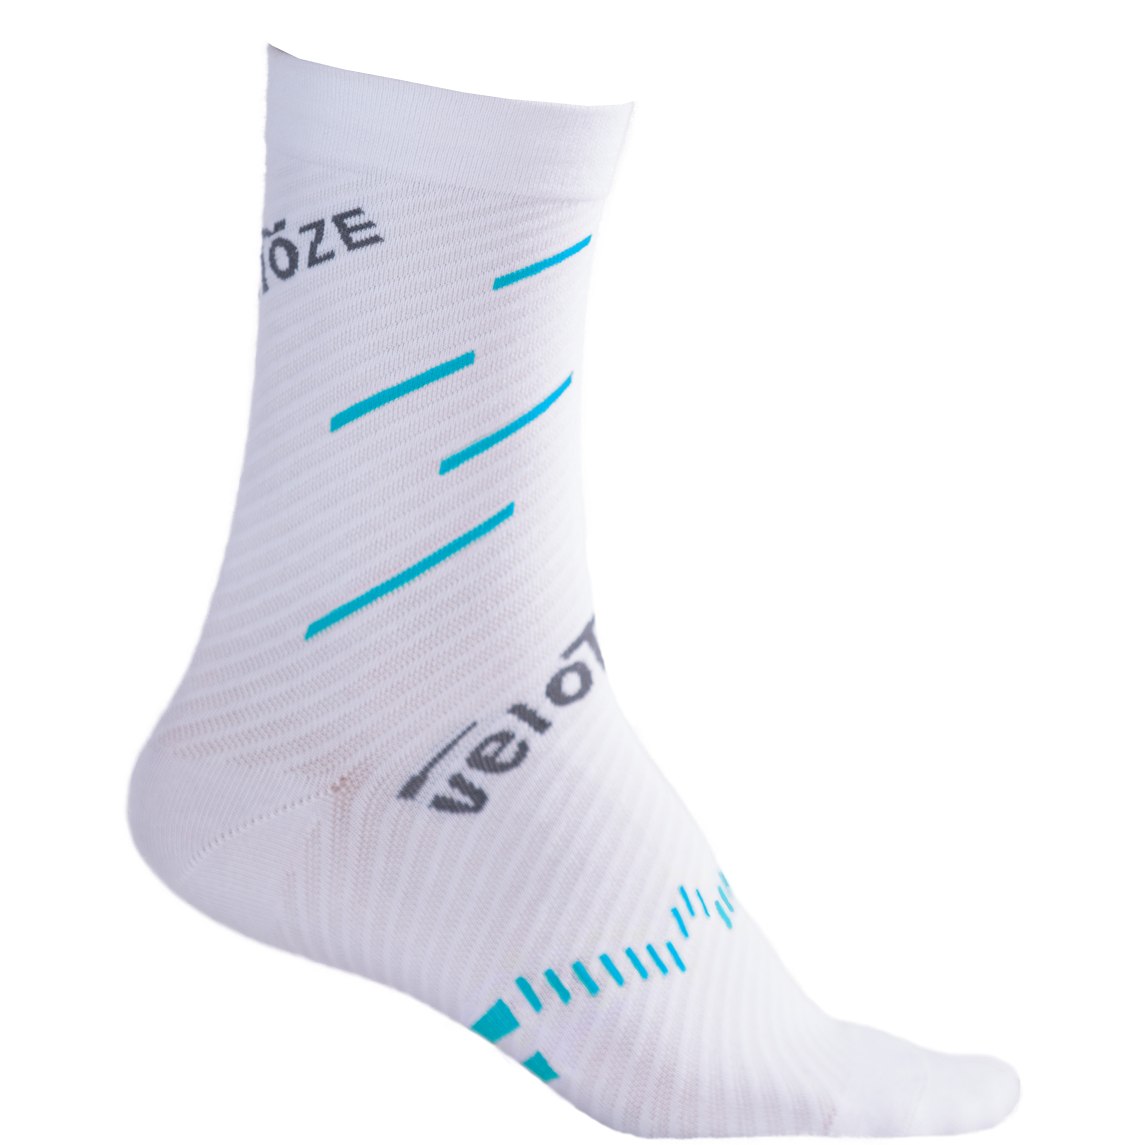 Produktbild von veloToze Coolmax Socken - Weiß/Blau